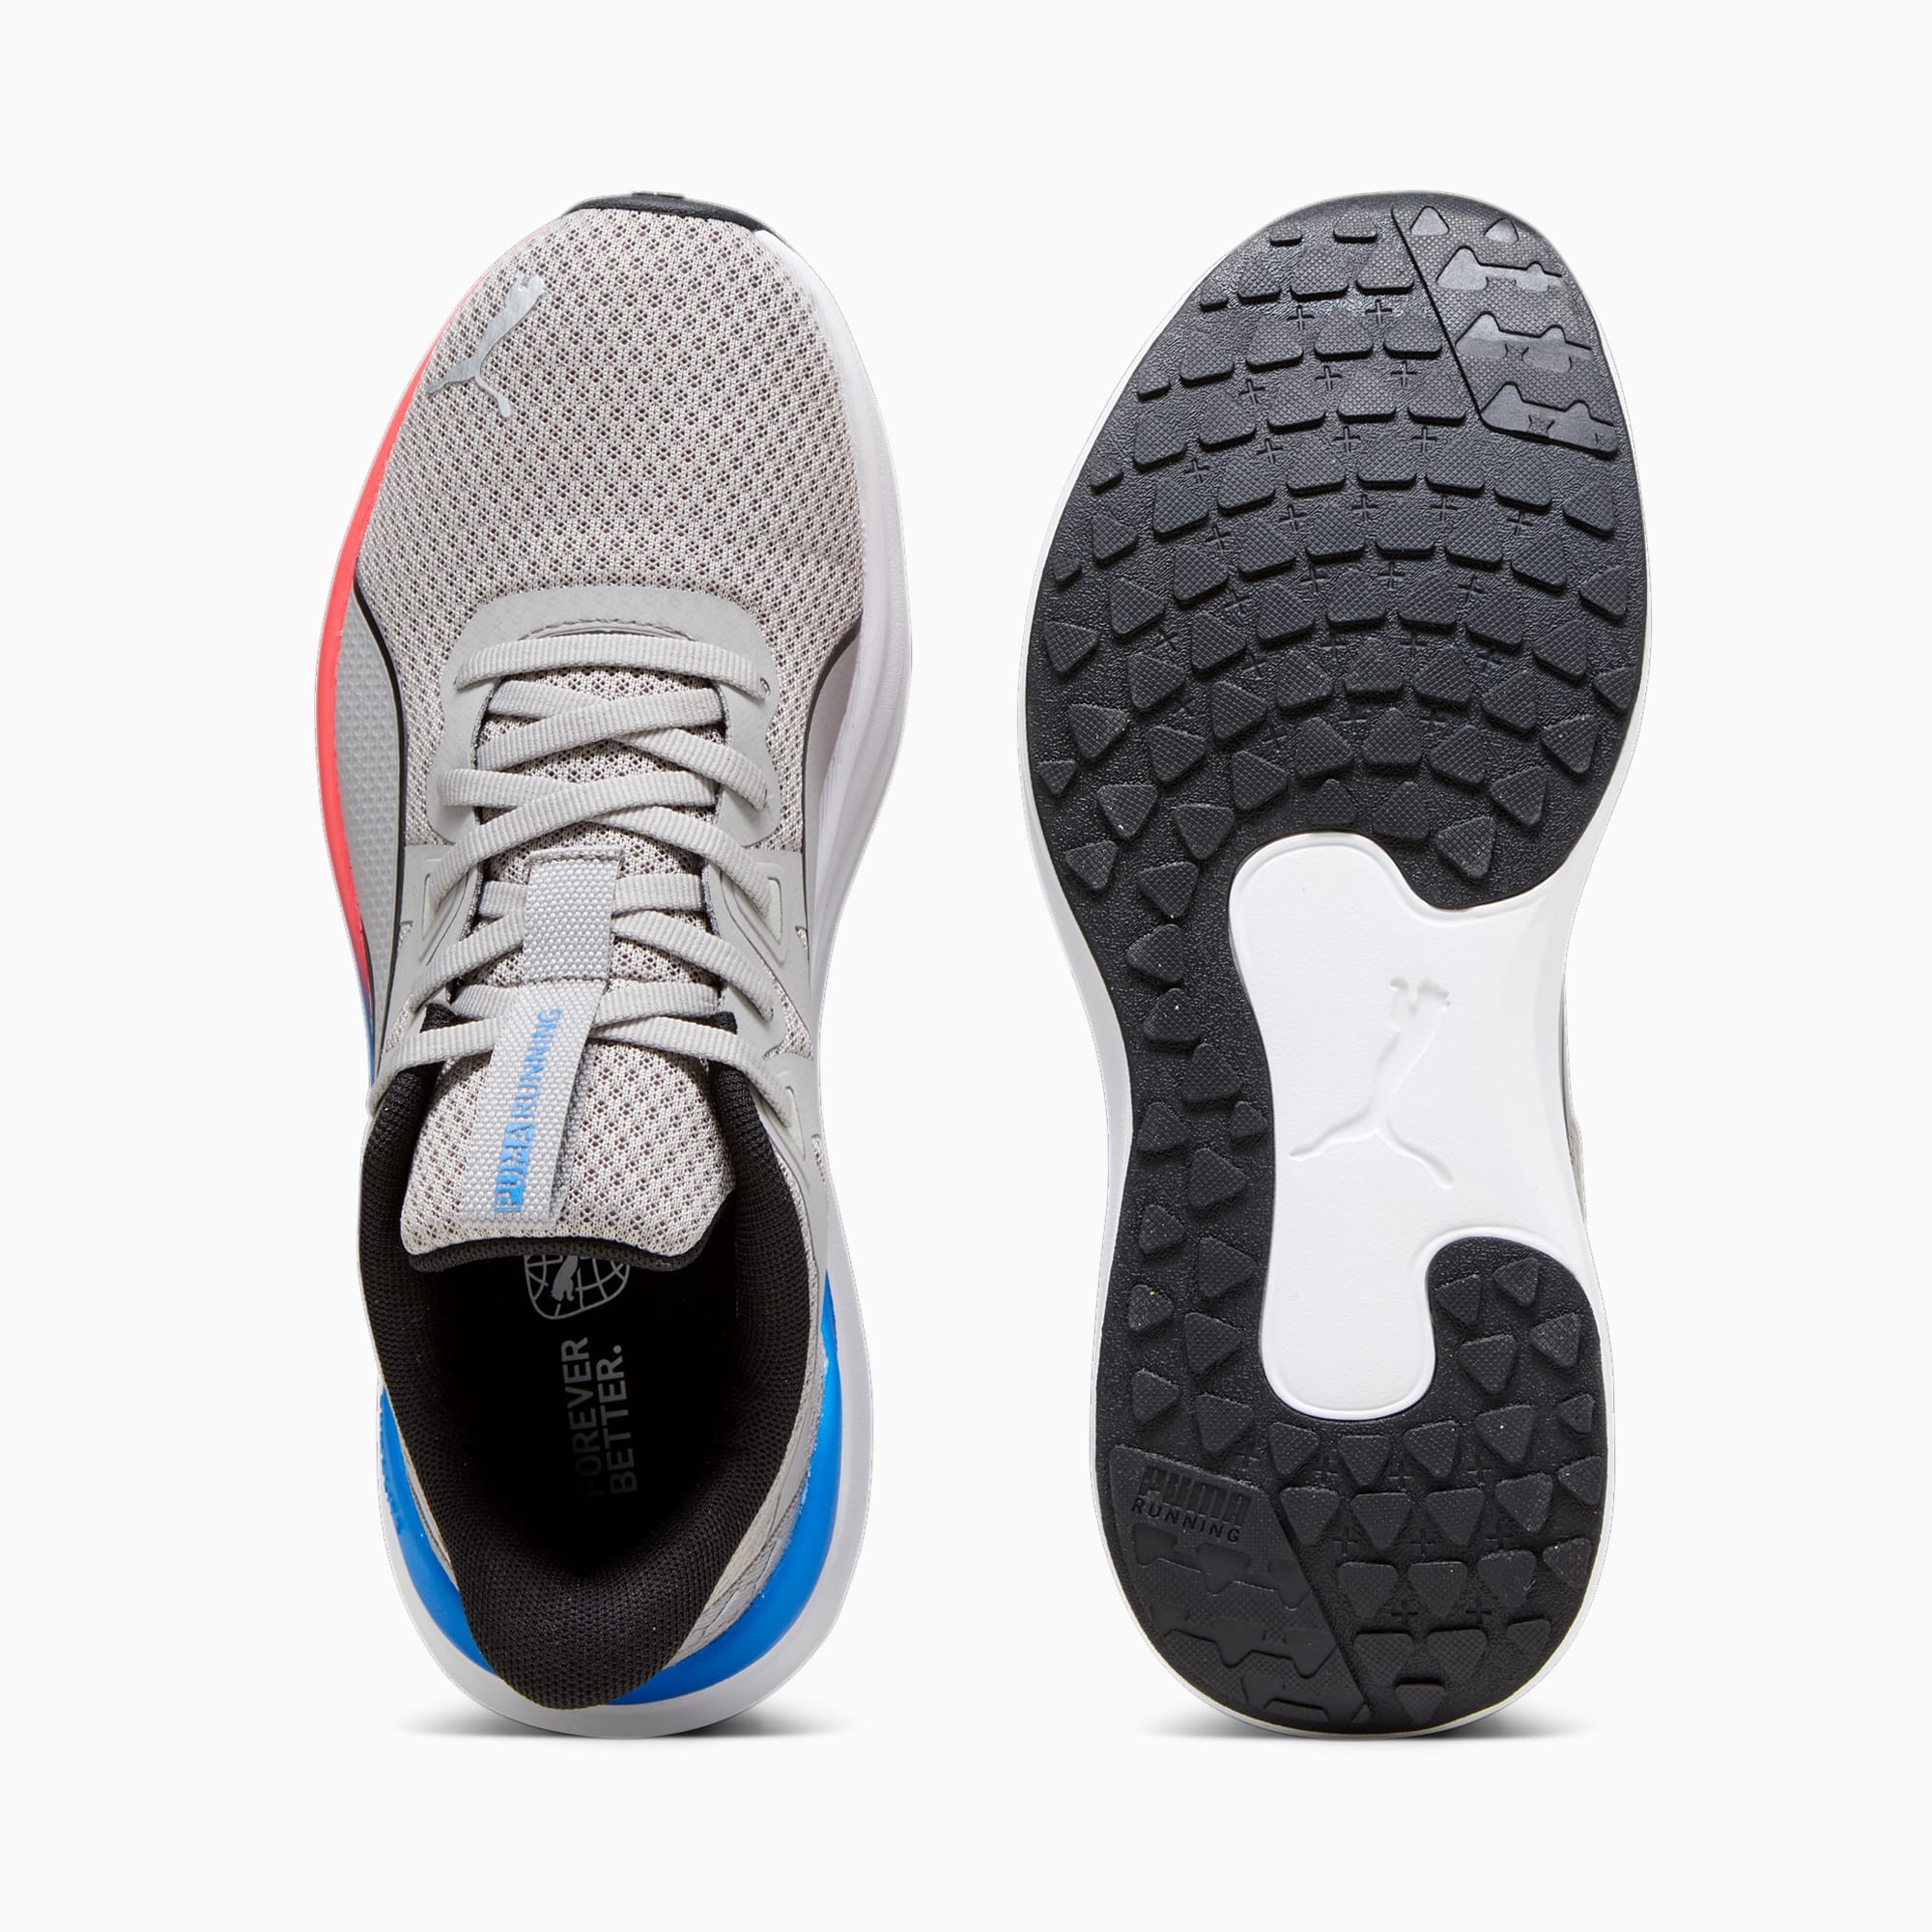 PUMA Chaussures De Running Reflect Lite, Gris/Bleu/Rose